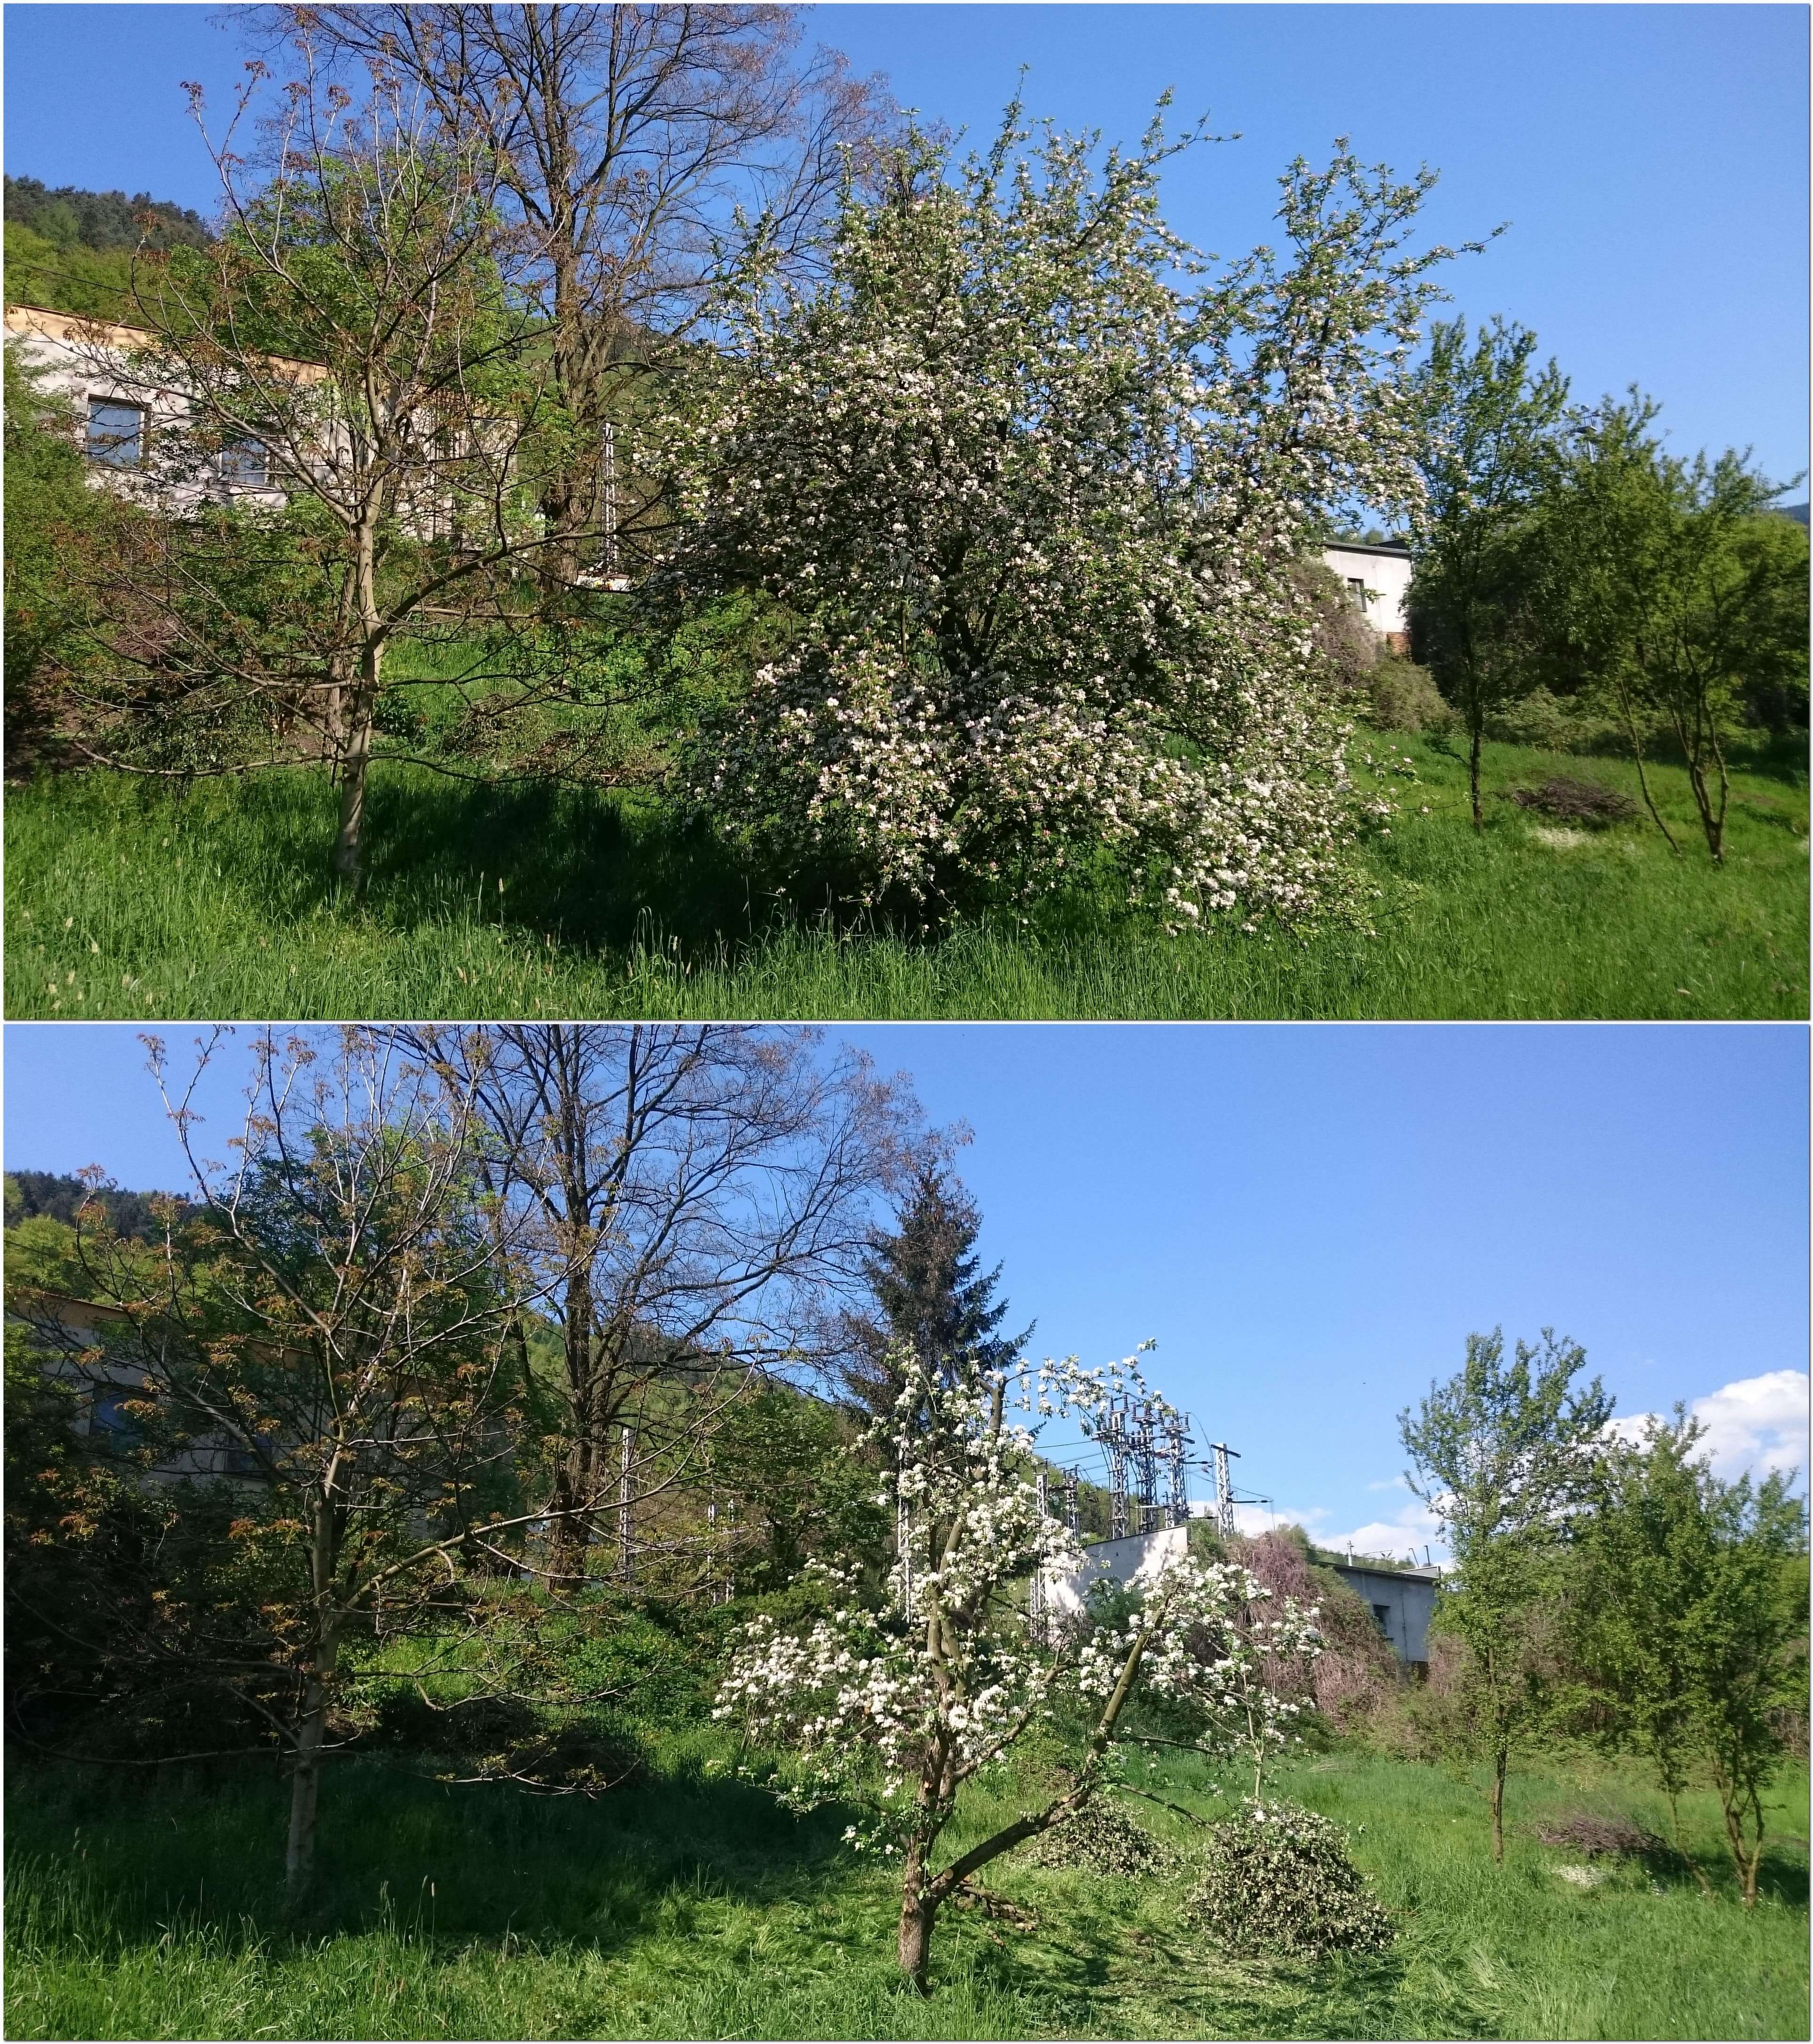 Prořezávka jabloně (před a po zásahu)